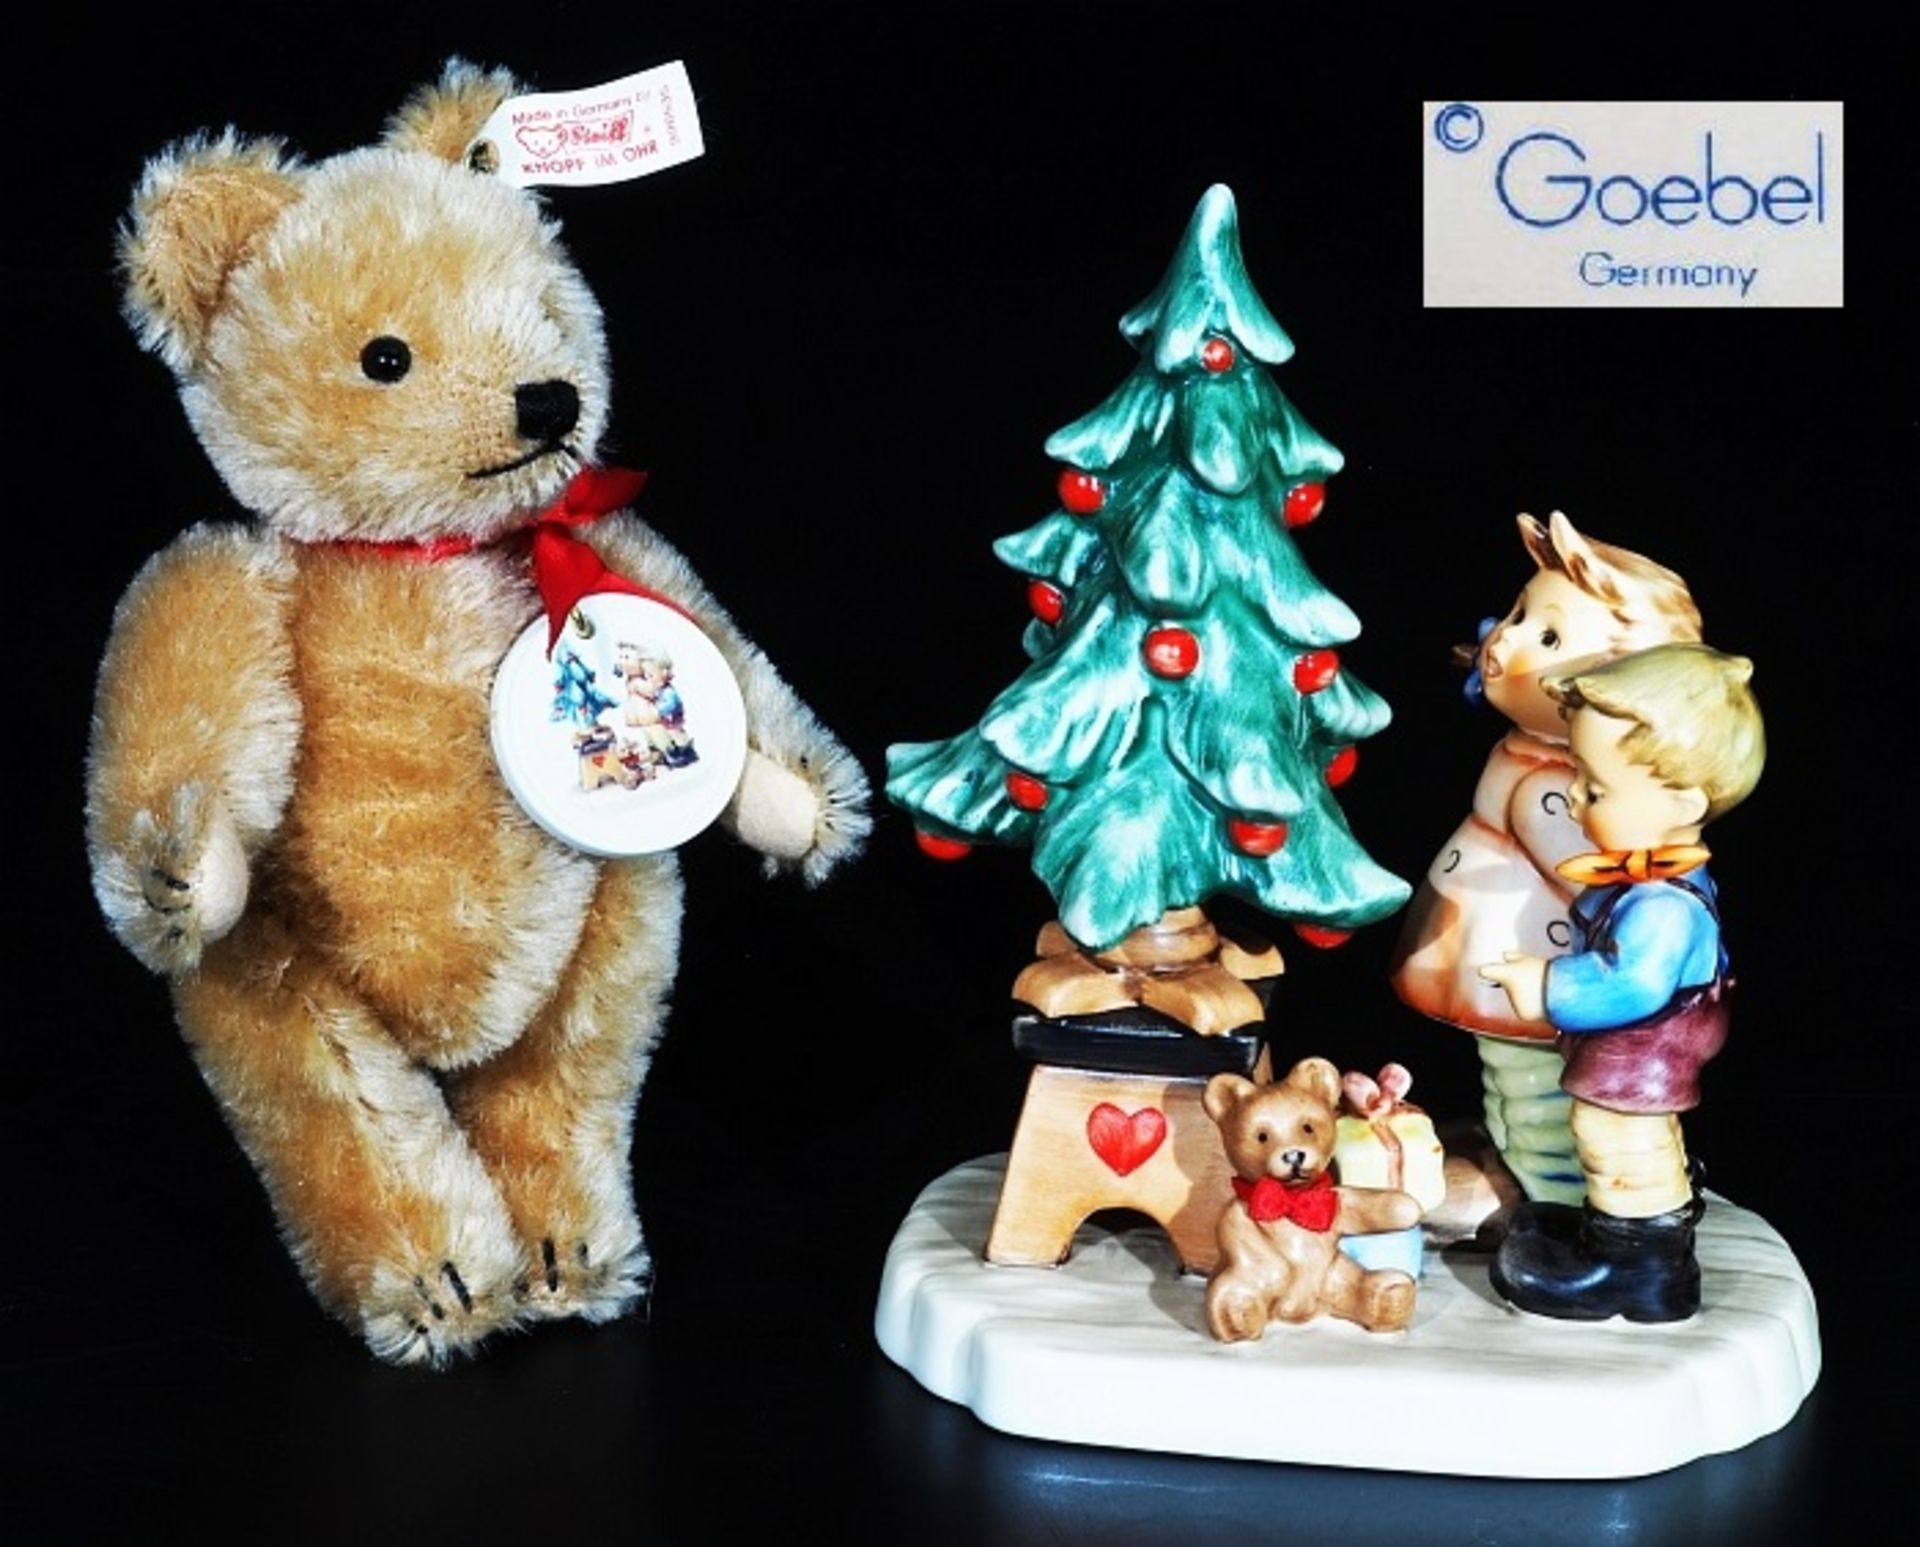 Hummel-Figurengruppe, Fa. Geobel, "Am Weihnachtsbaum" mit Steiff-Teddybär. Geschwisterpaar mit Te